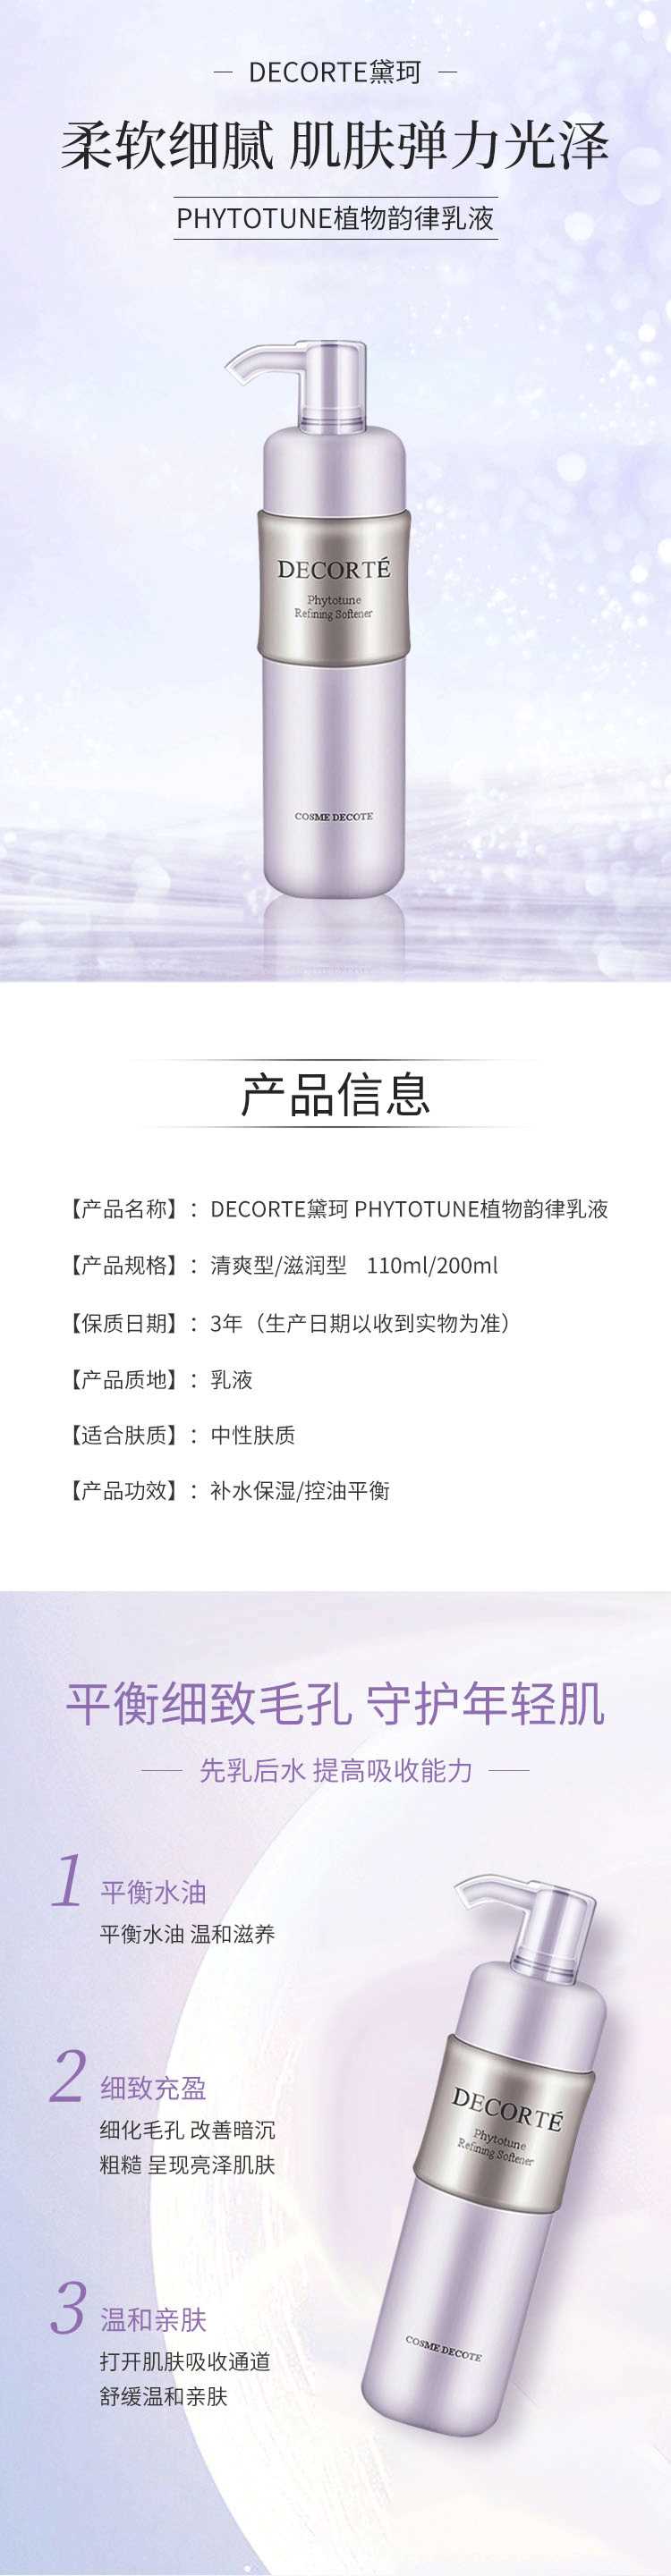 DECORTE黛珂-PHYTOTUNE植物韵律乳液_01.gif